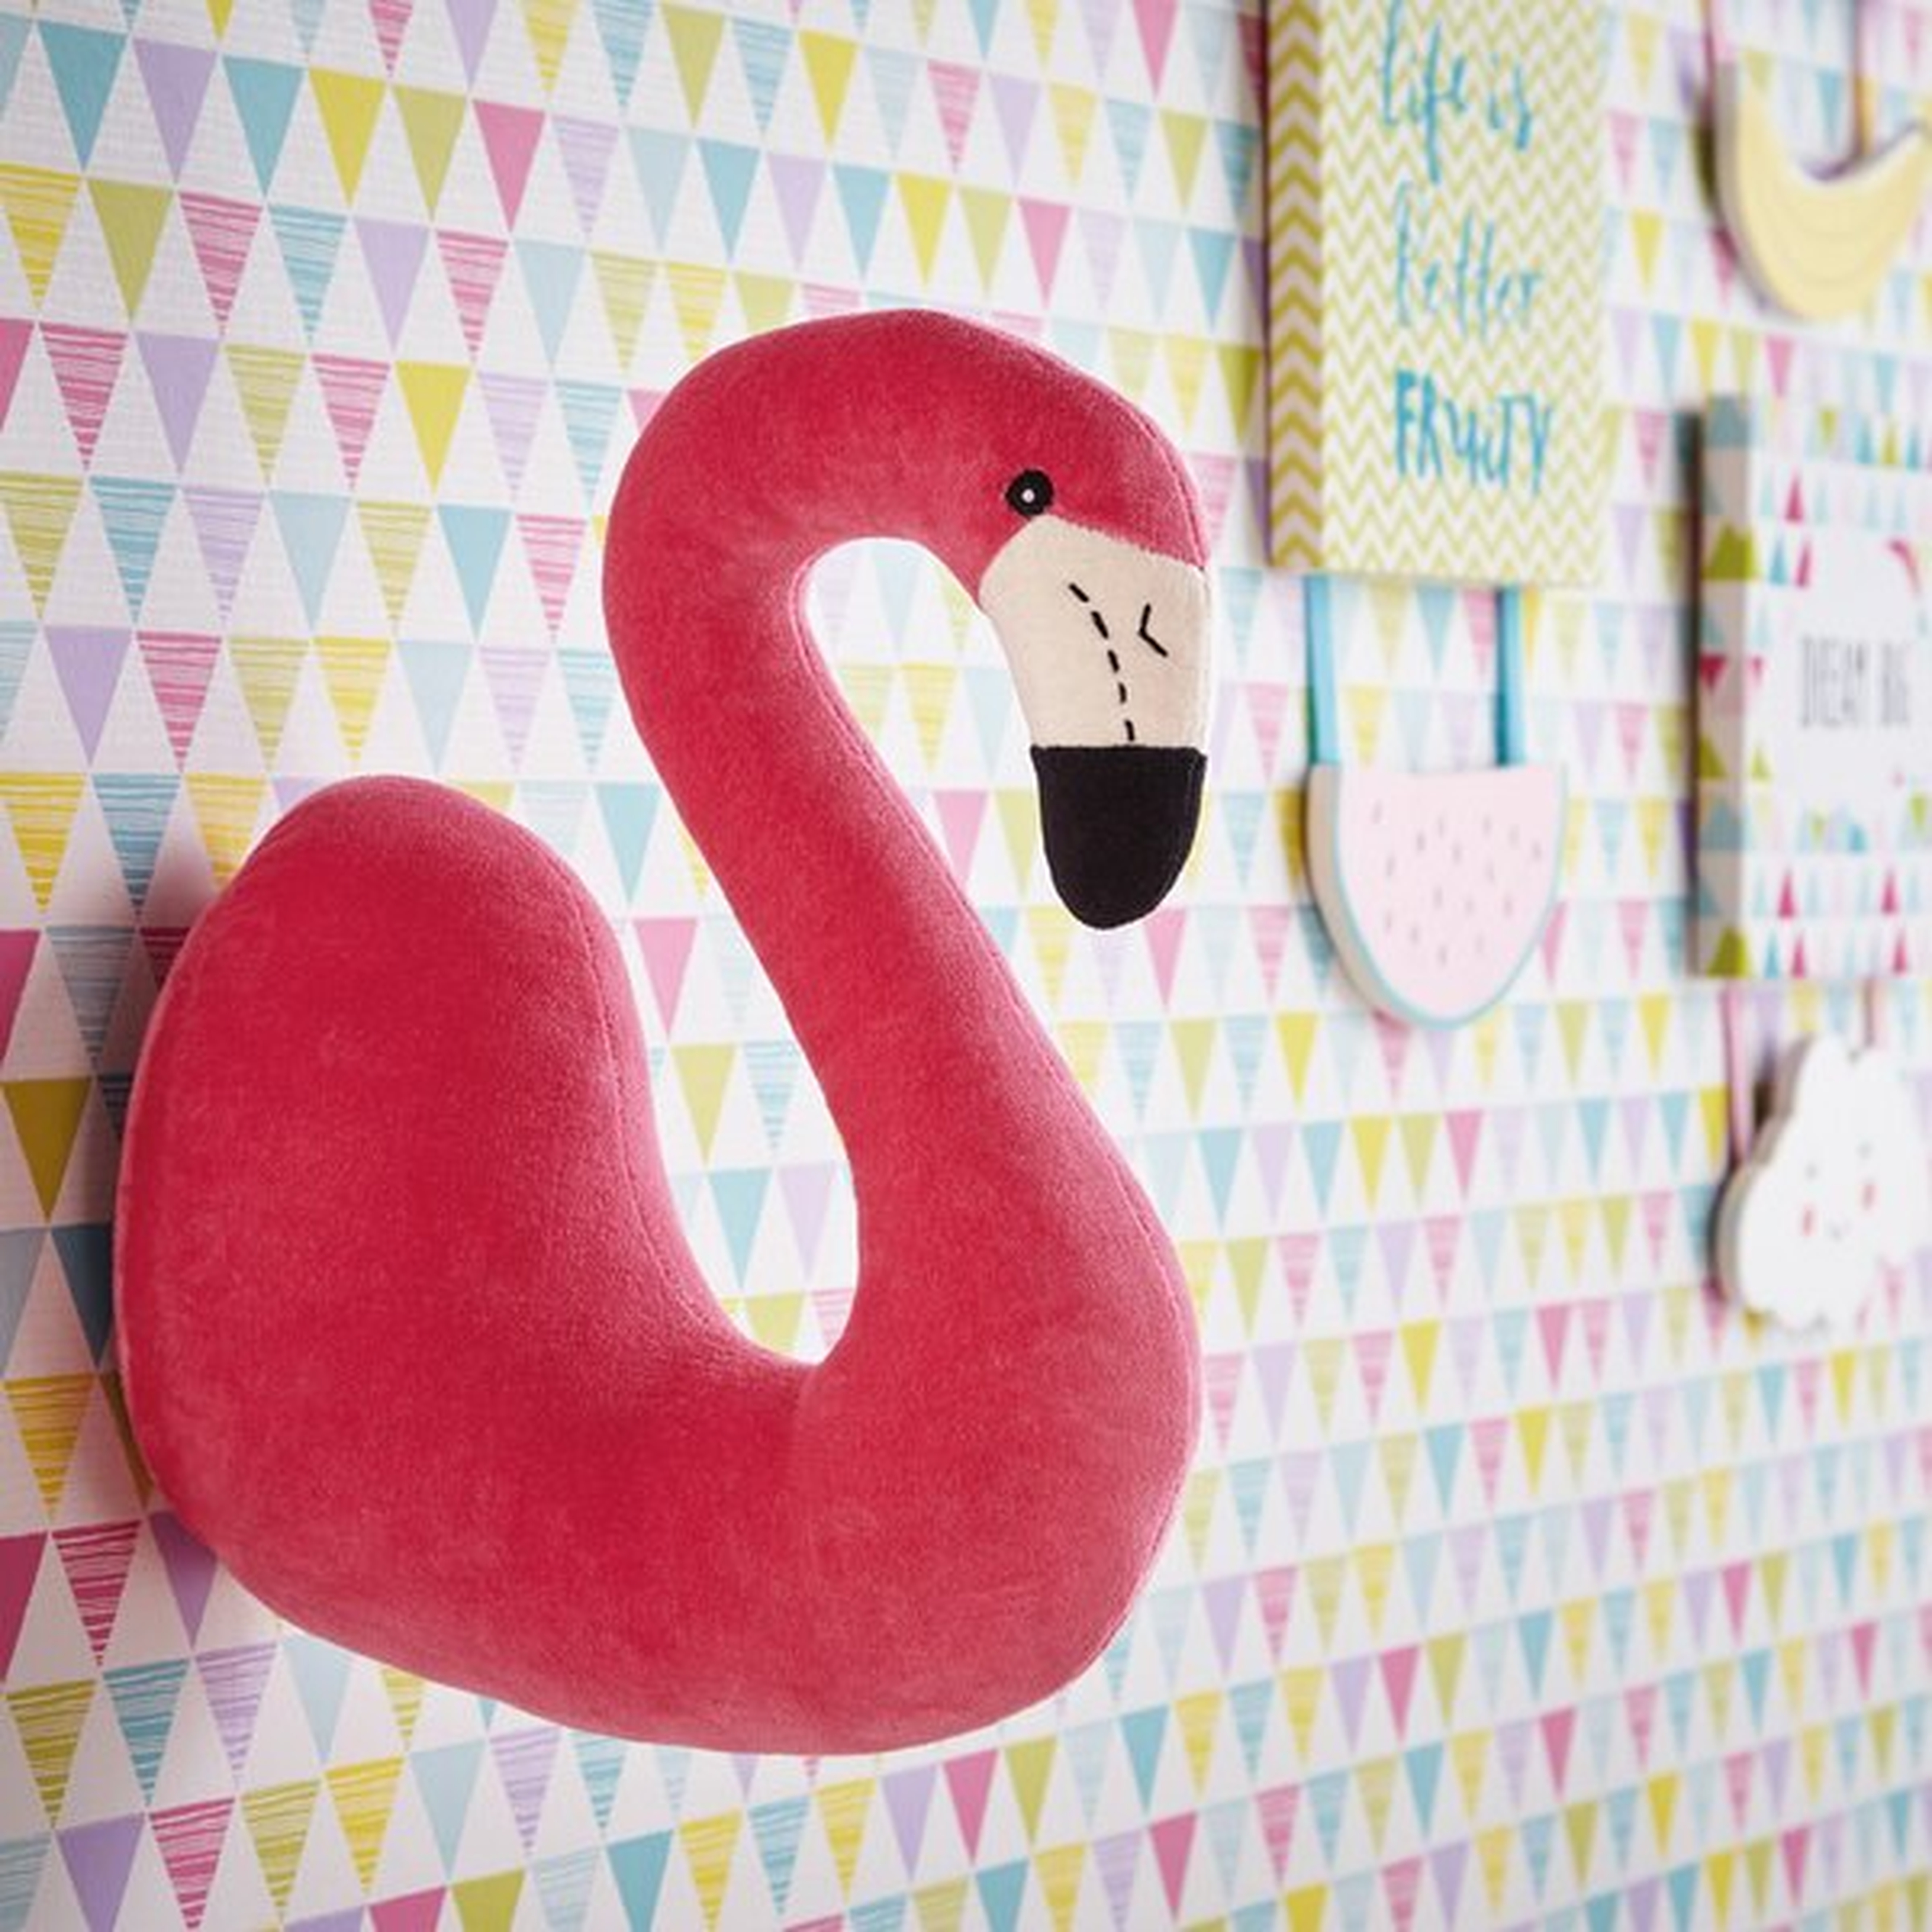 The Flamingo 3D Animal Head Wall Décor - Wayfair